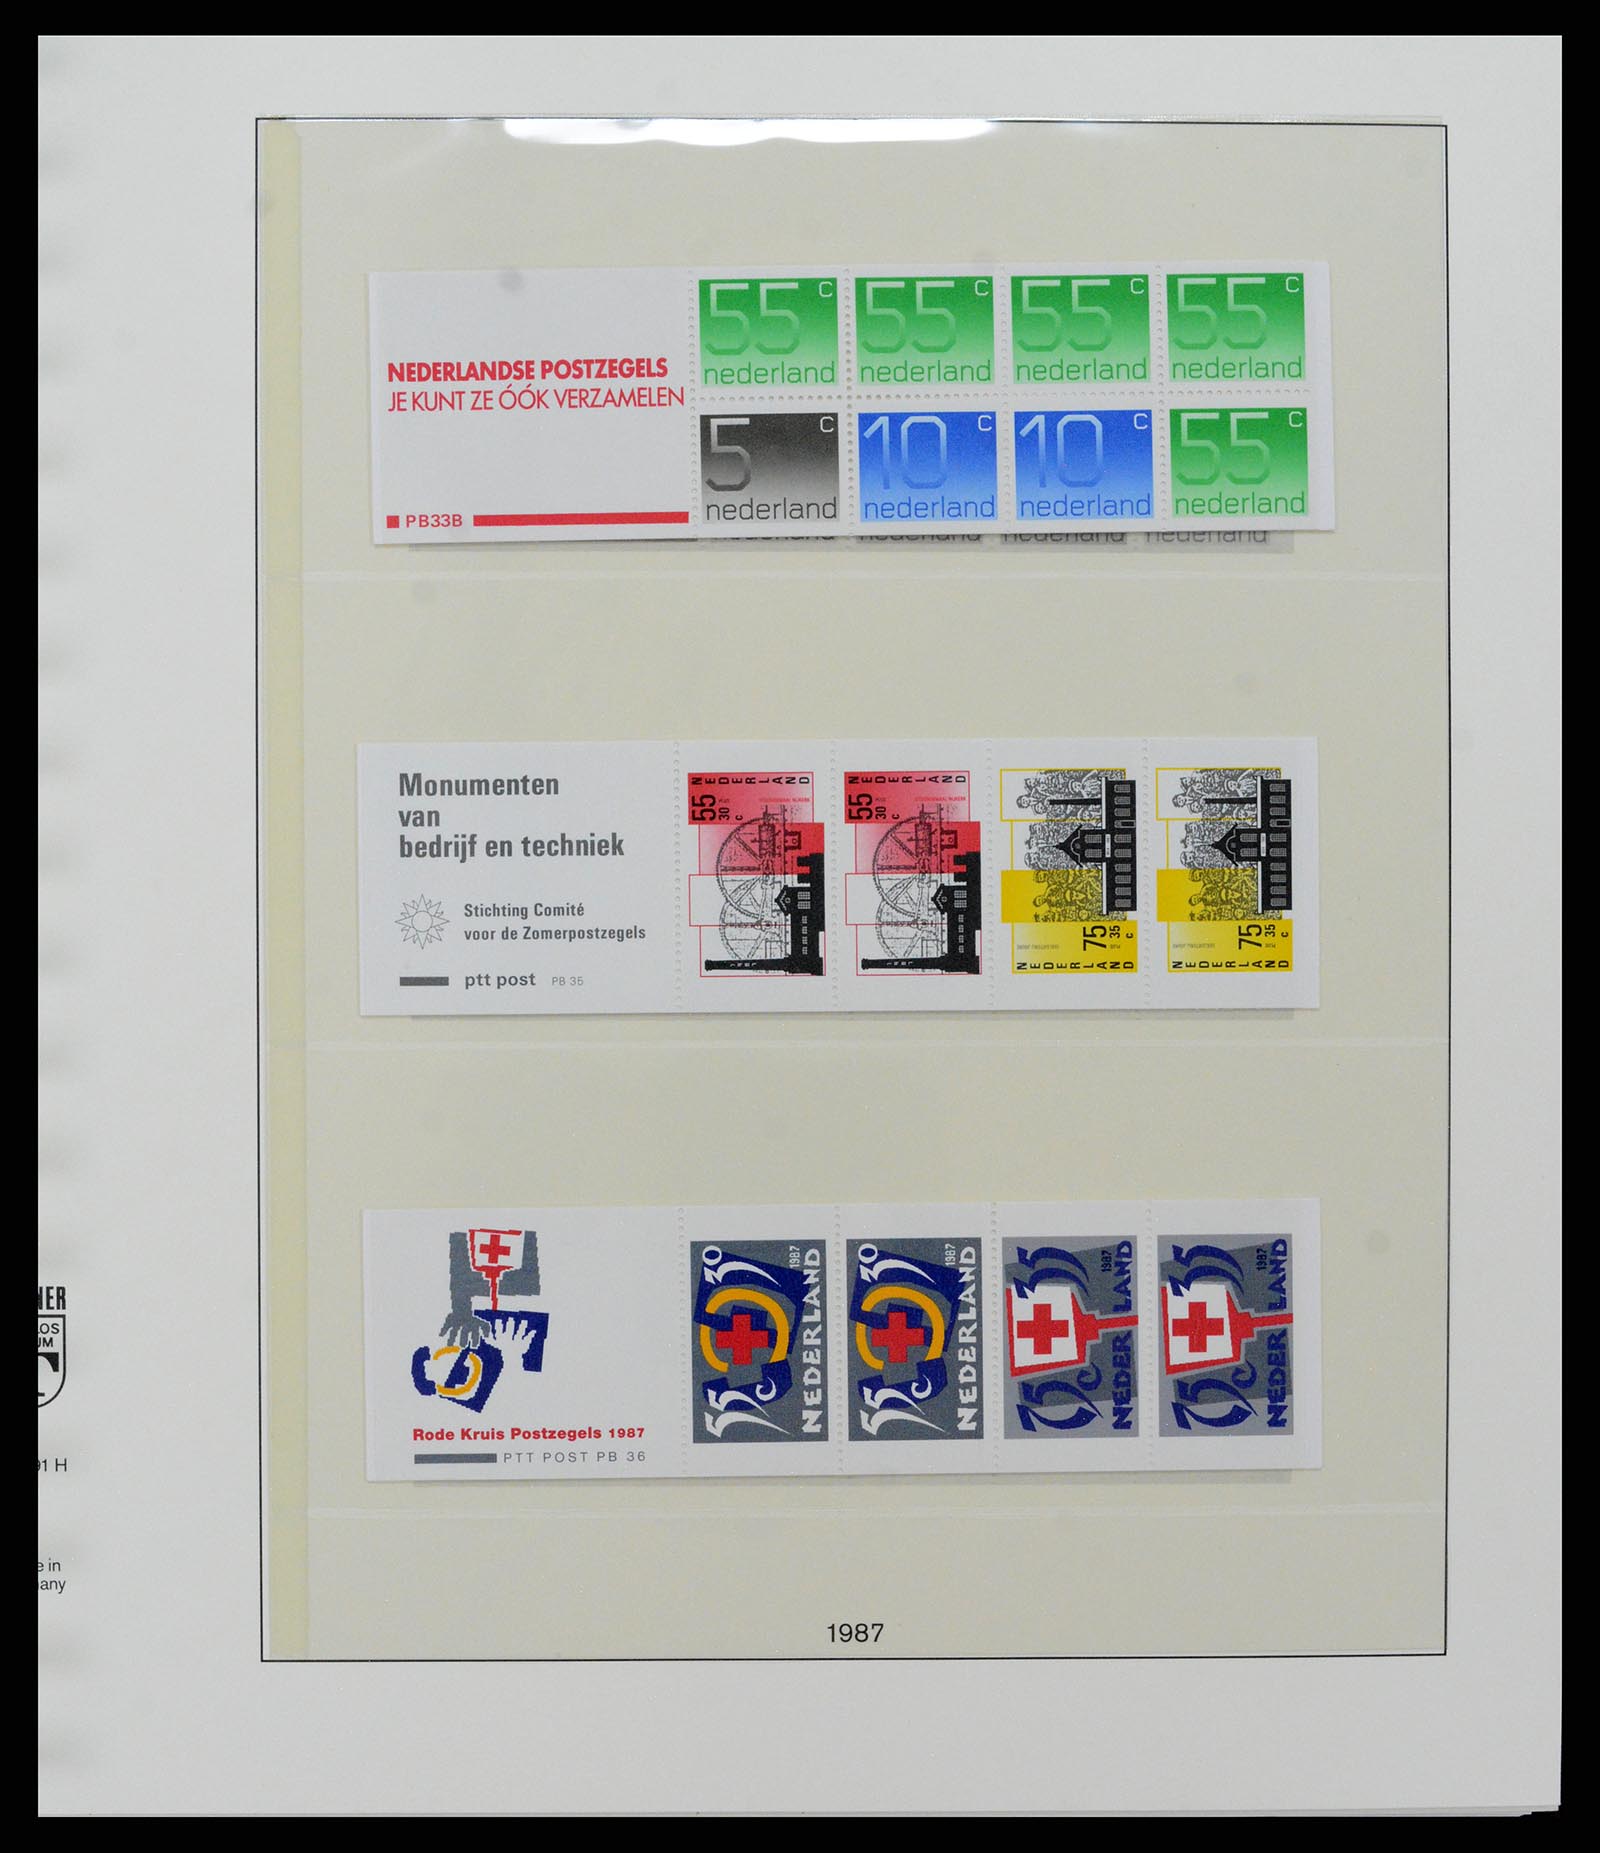 37994 022 - Stamp Collection 37994 Netherlands stampbooklets 1964-2002.